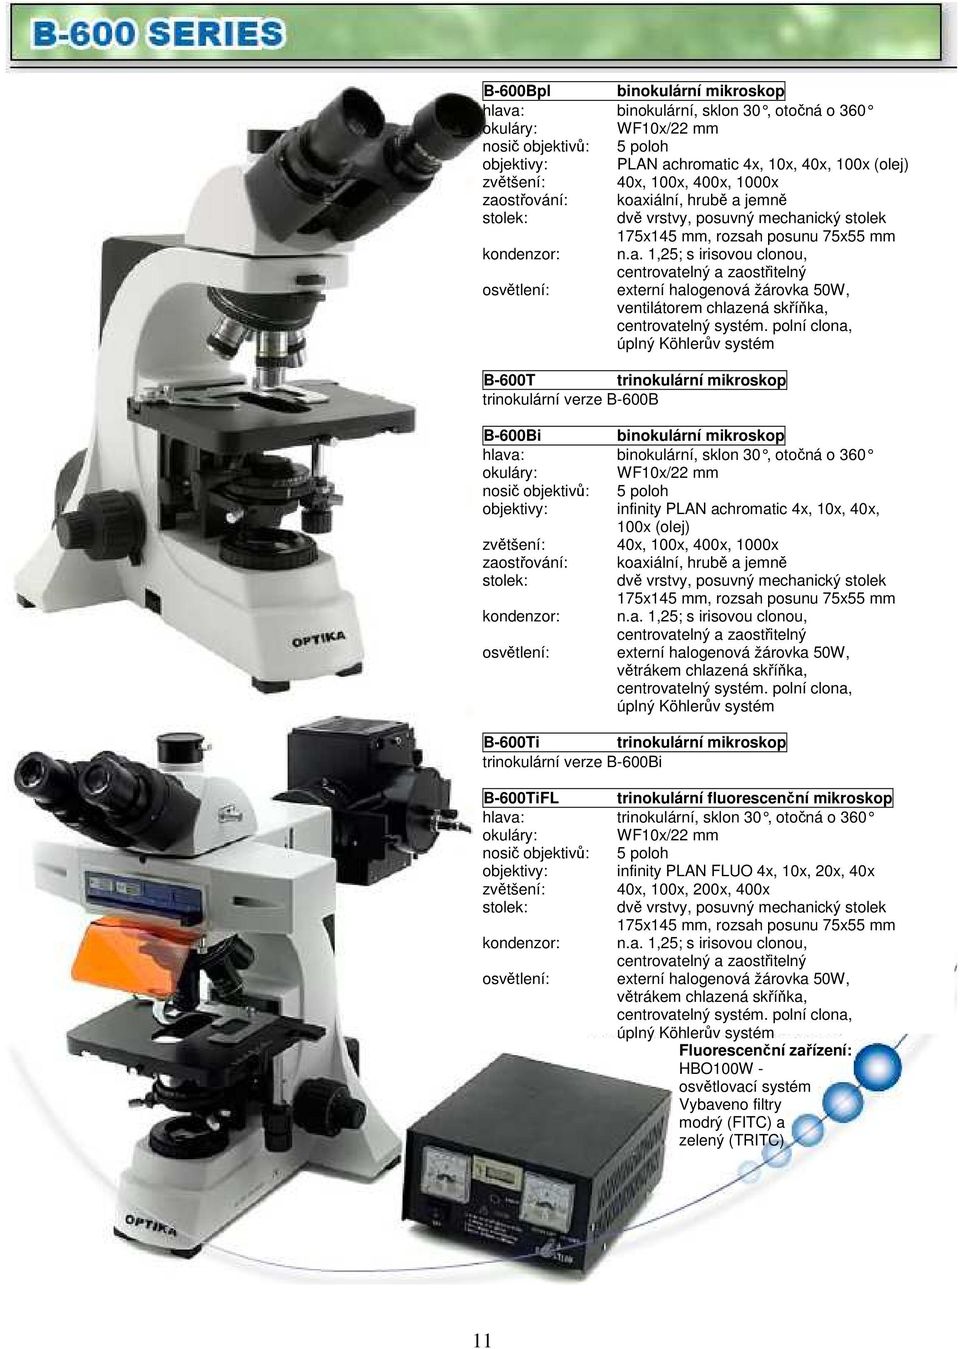 polní clona, úplný Köhlerův systém B-600T trinokulární mikroskop trinokulární verze B-600B B-600Bi binokulární mikroskop hlava: binokulární, sklon 30, otočná o 360 WF10x/22 mm nosič objektivů: 5